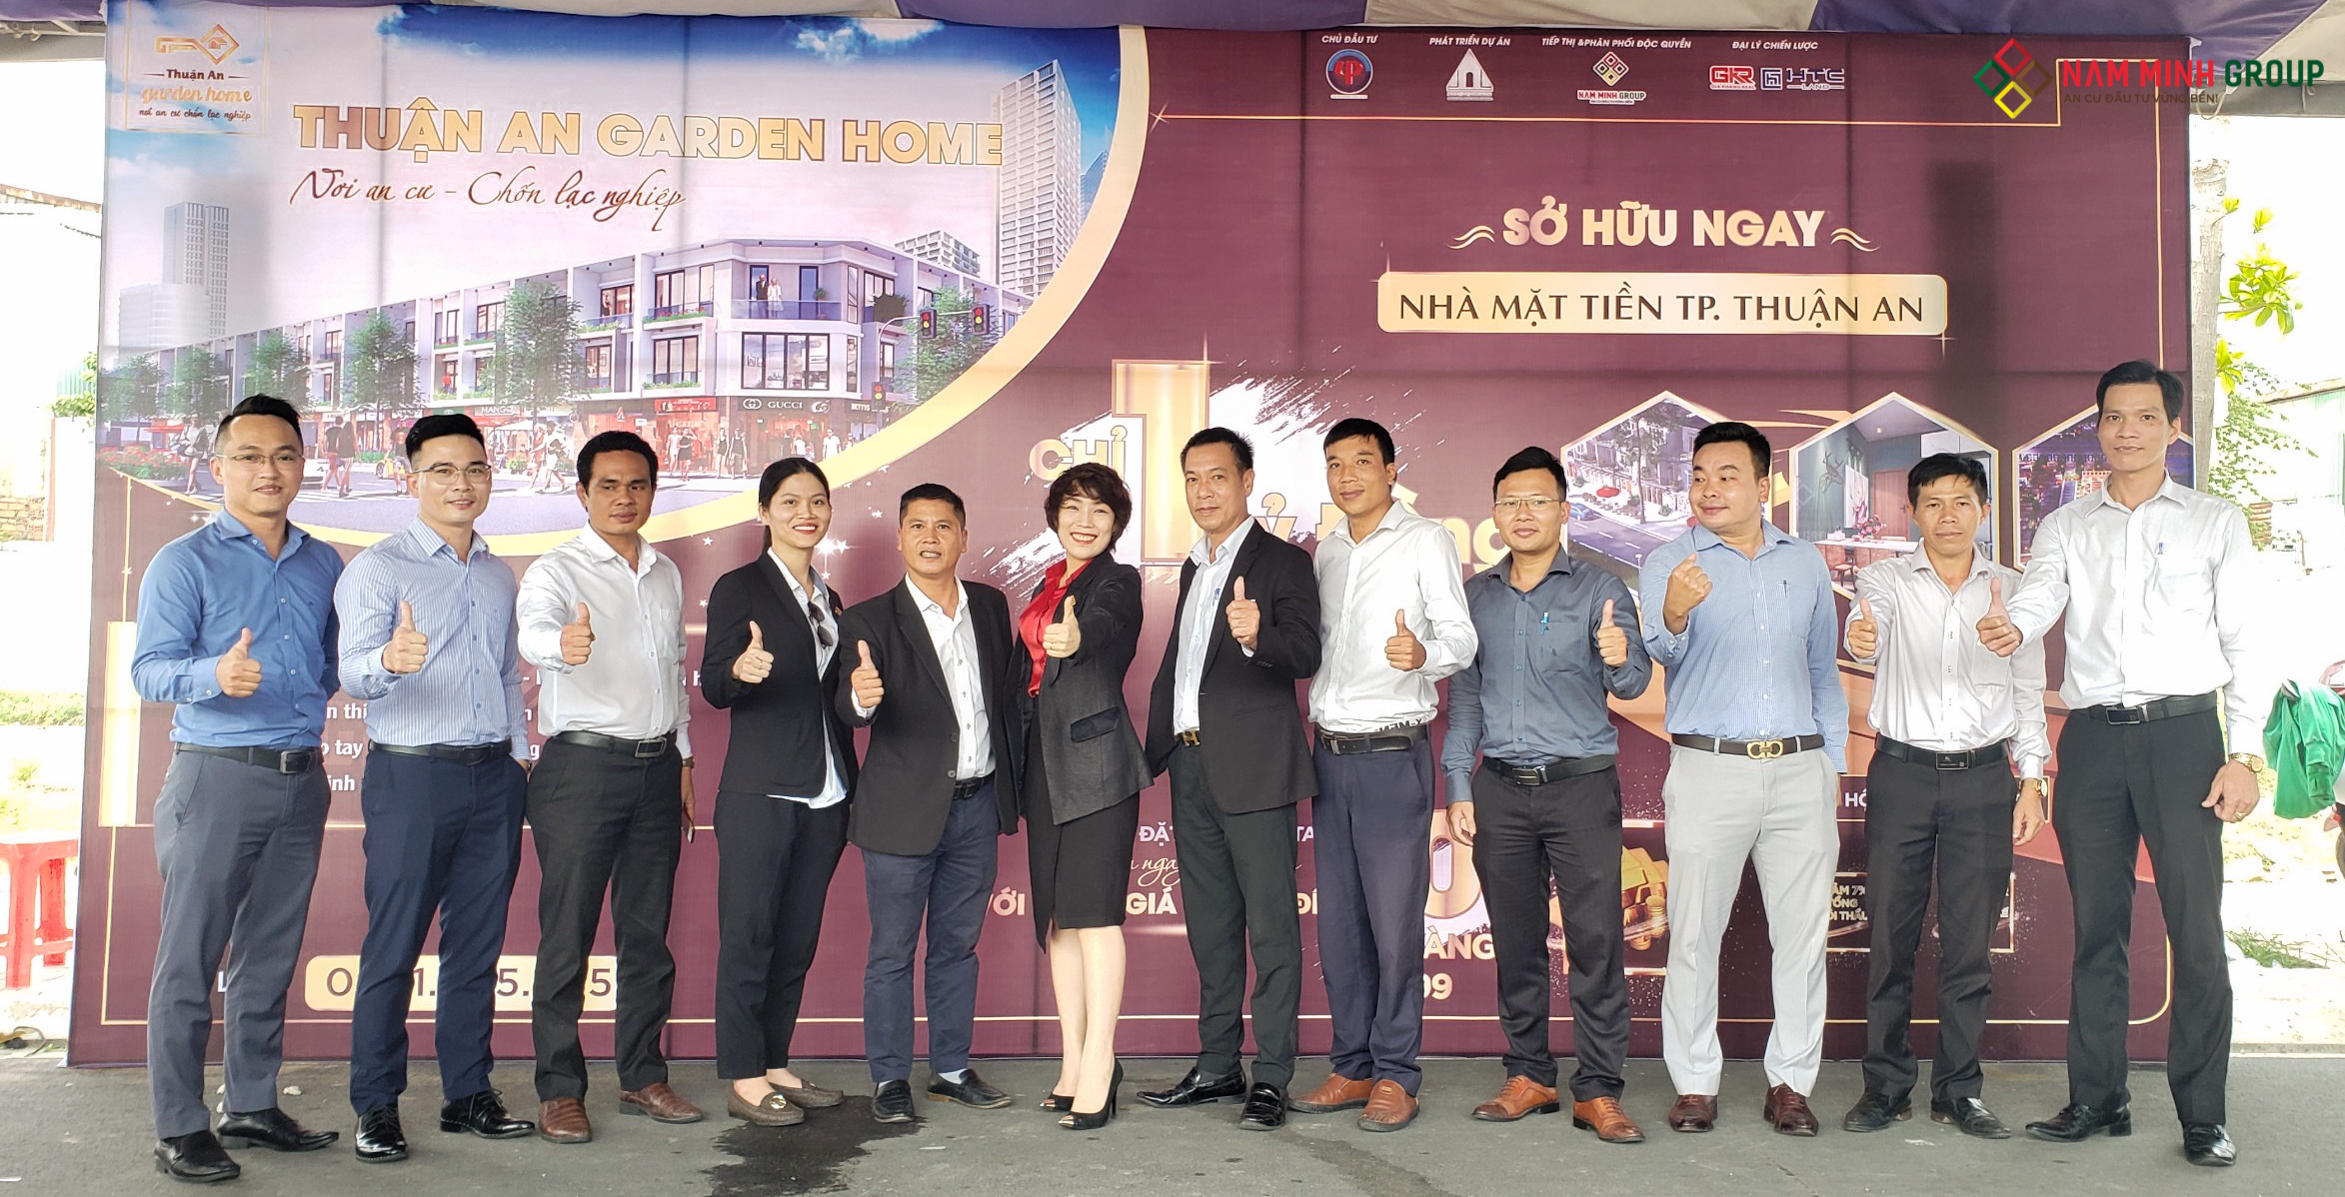 Các lãnh đạo của các công ty cùng tham gia lễ ra quân dự án Thuận An Garden Home